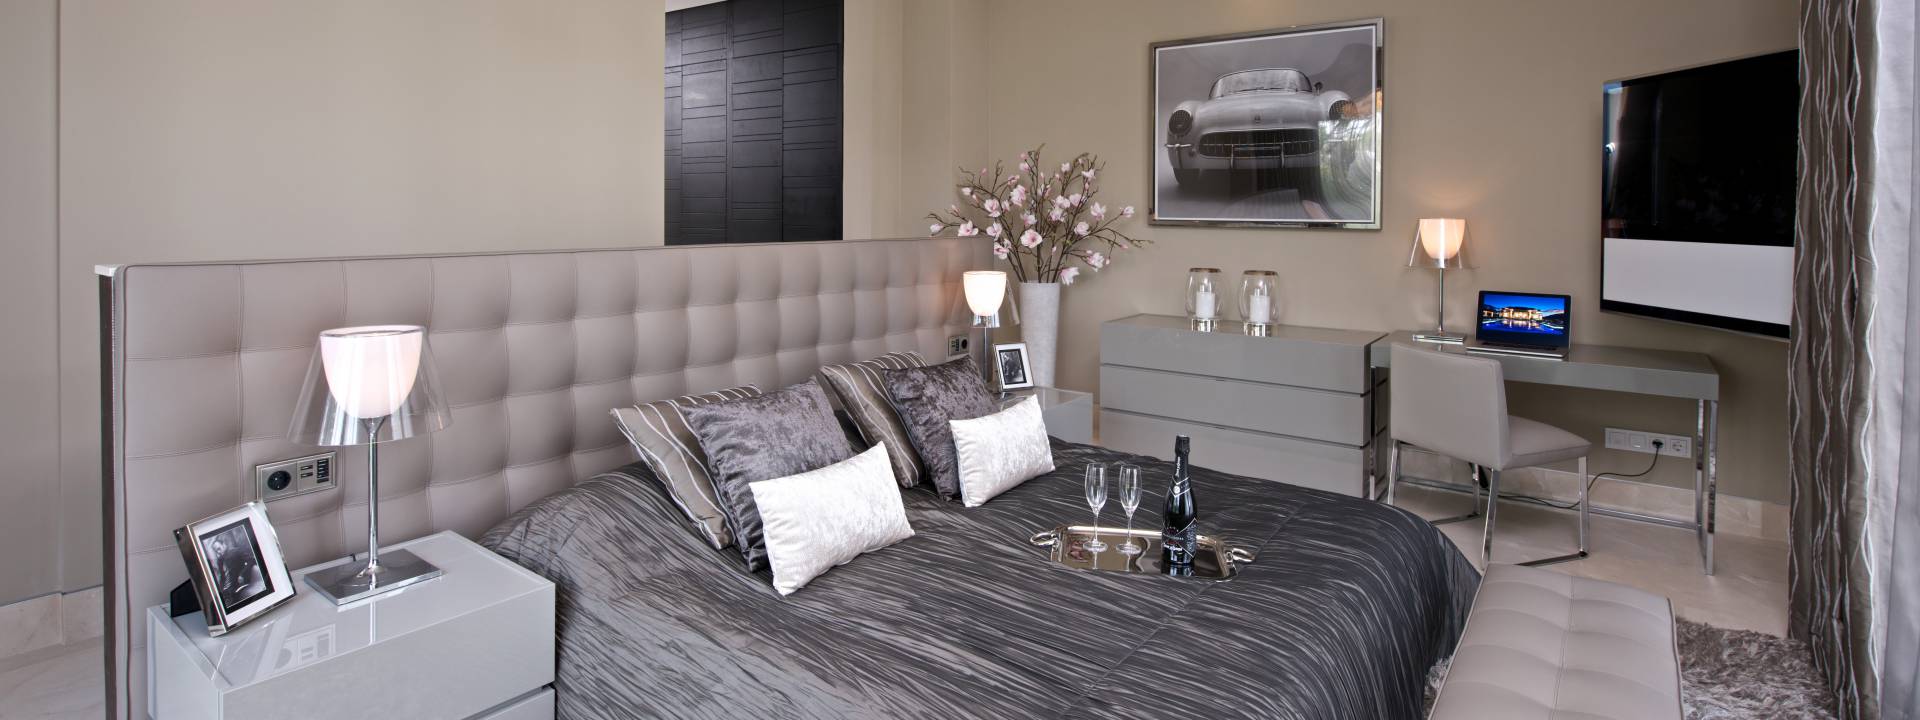 Contemporary Holiday Villa. Modern exclusive bedroom. Taylor interiors.